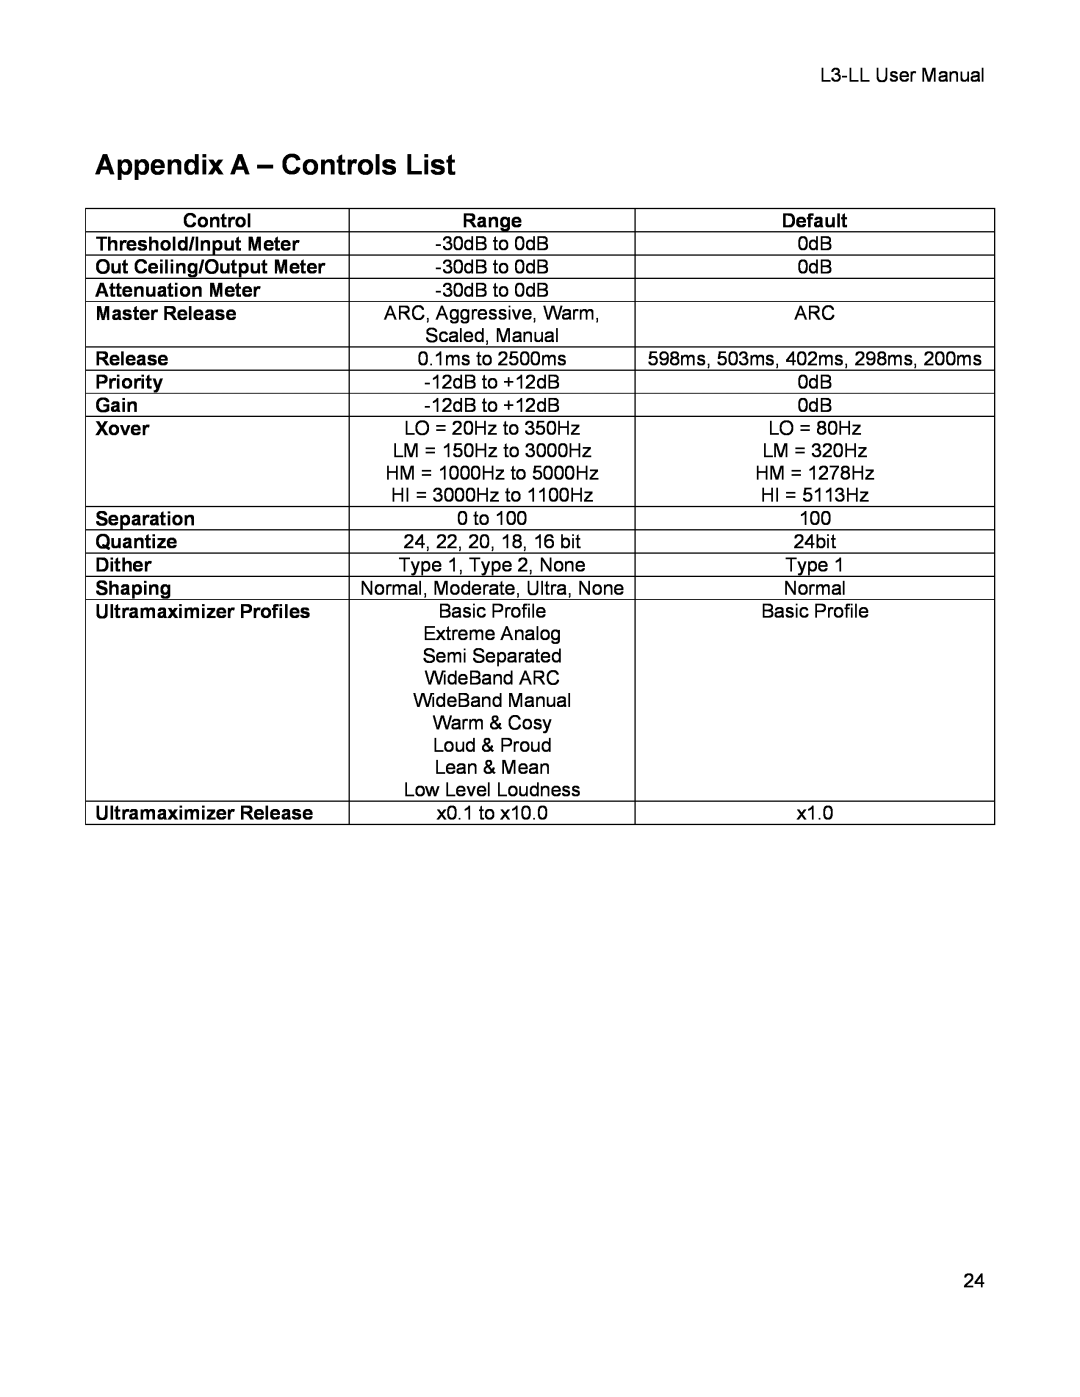 Waves L3-LL user manual Appendix A - Controls List 